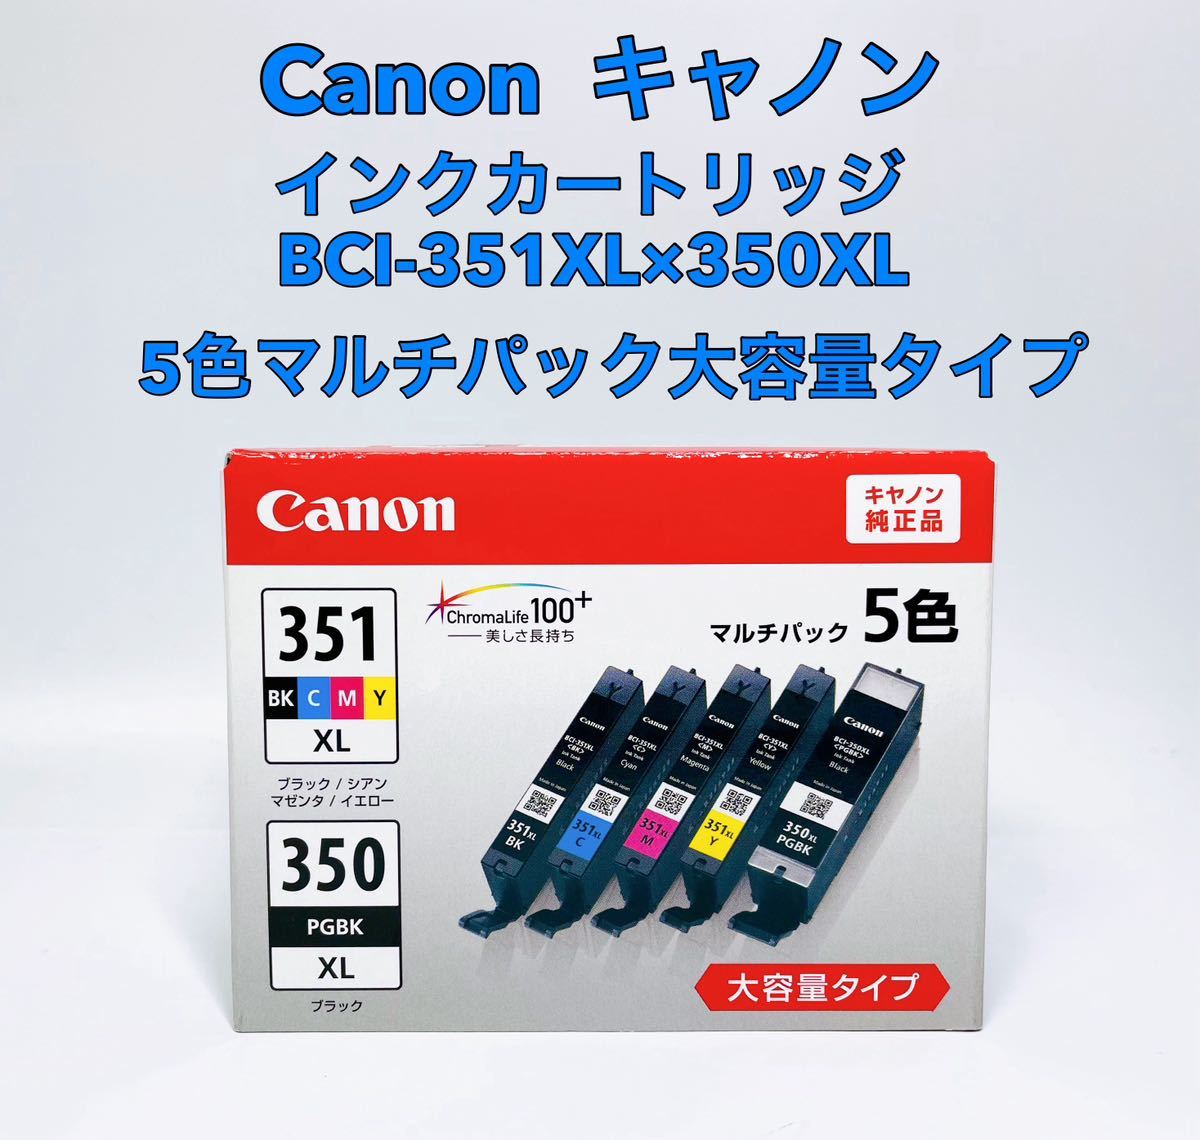 ■新品 未使用■ Canon キャノン インクカートリッジ BCI-351XL×350XL 5色マルチパック大容量タイプの画像1